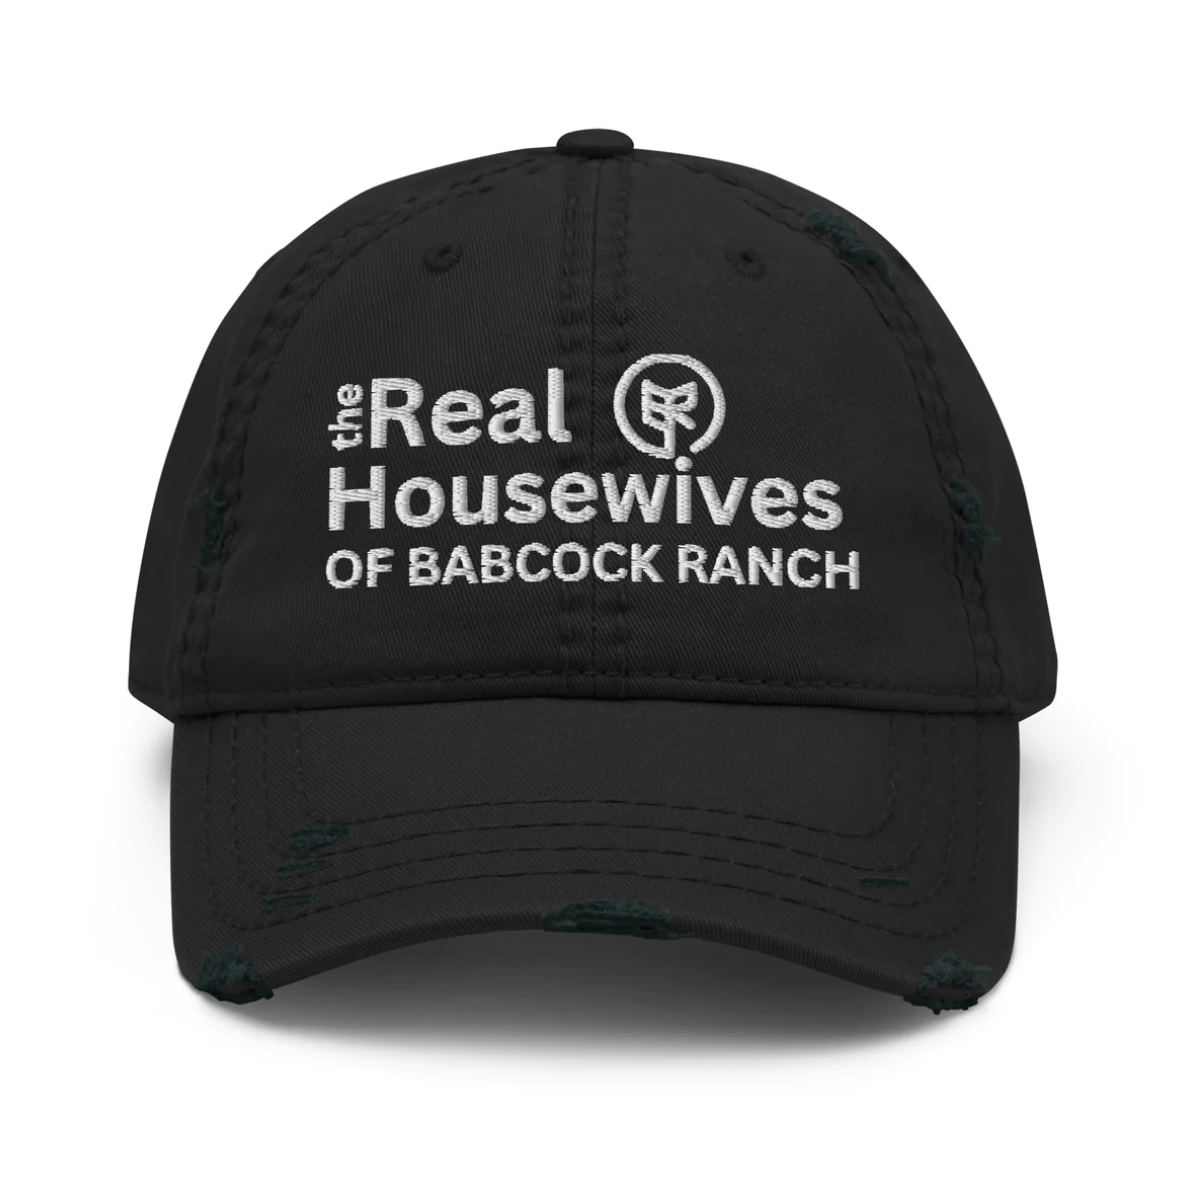 Babcock Ranch Life